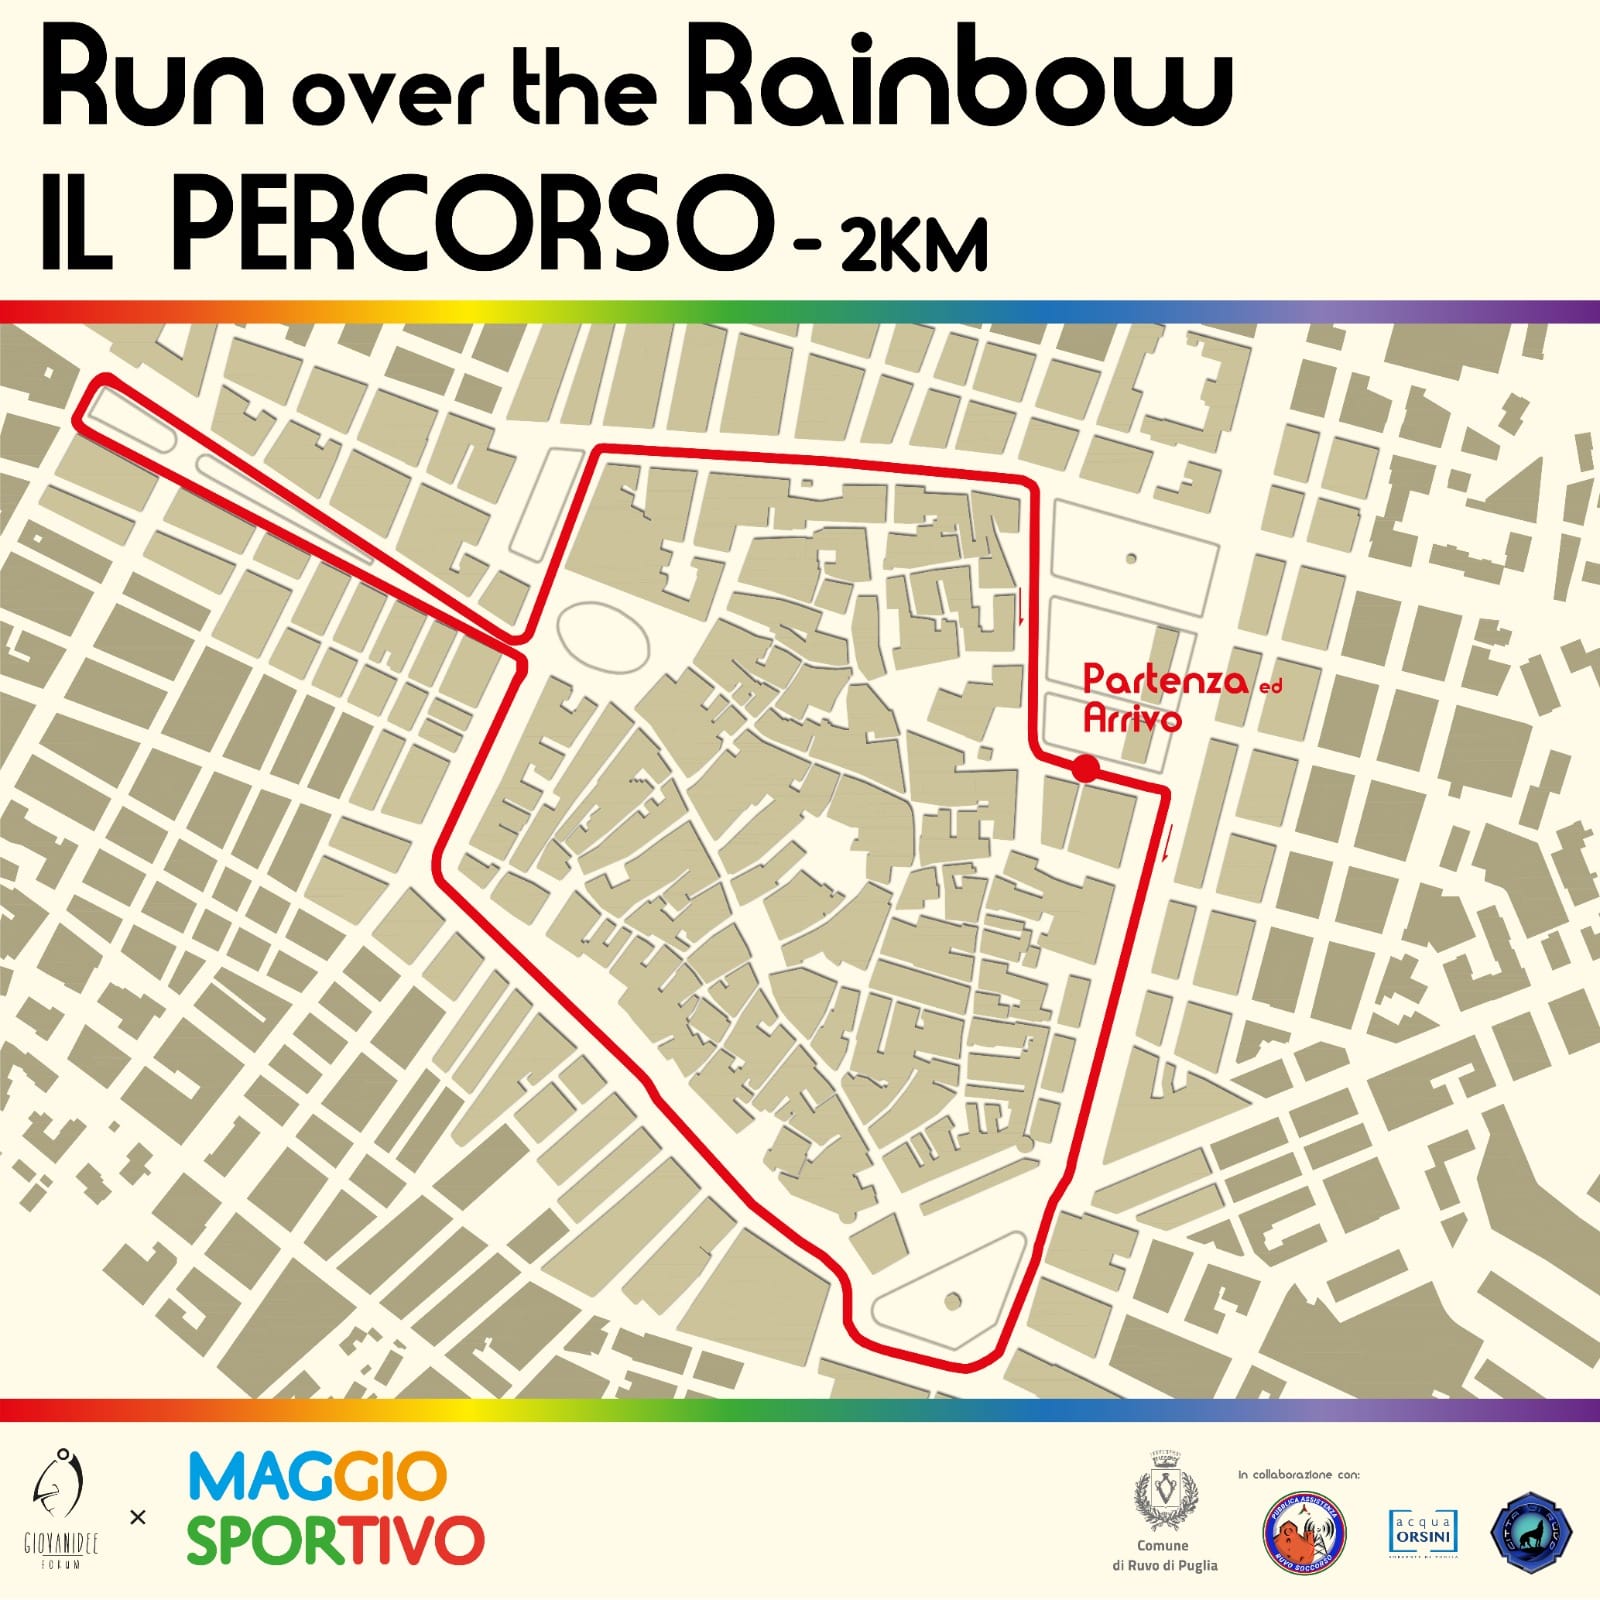 Ruvo di Puglia, Maggio sportivo: l'evento run over the rainbow 